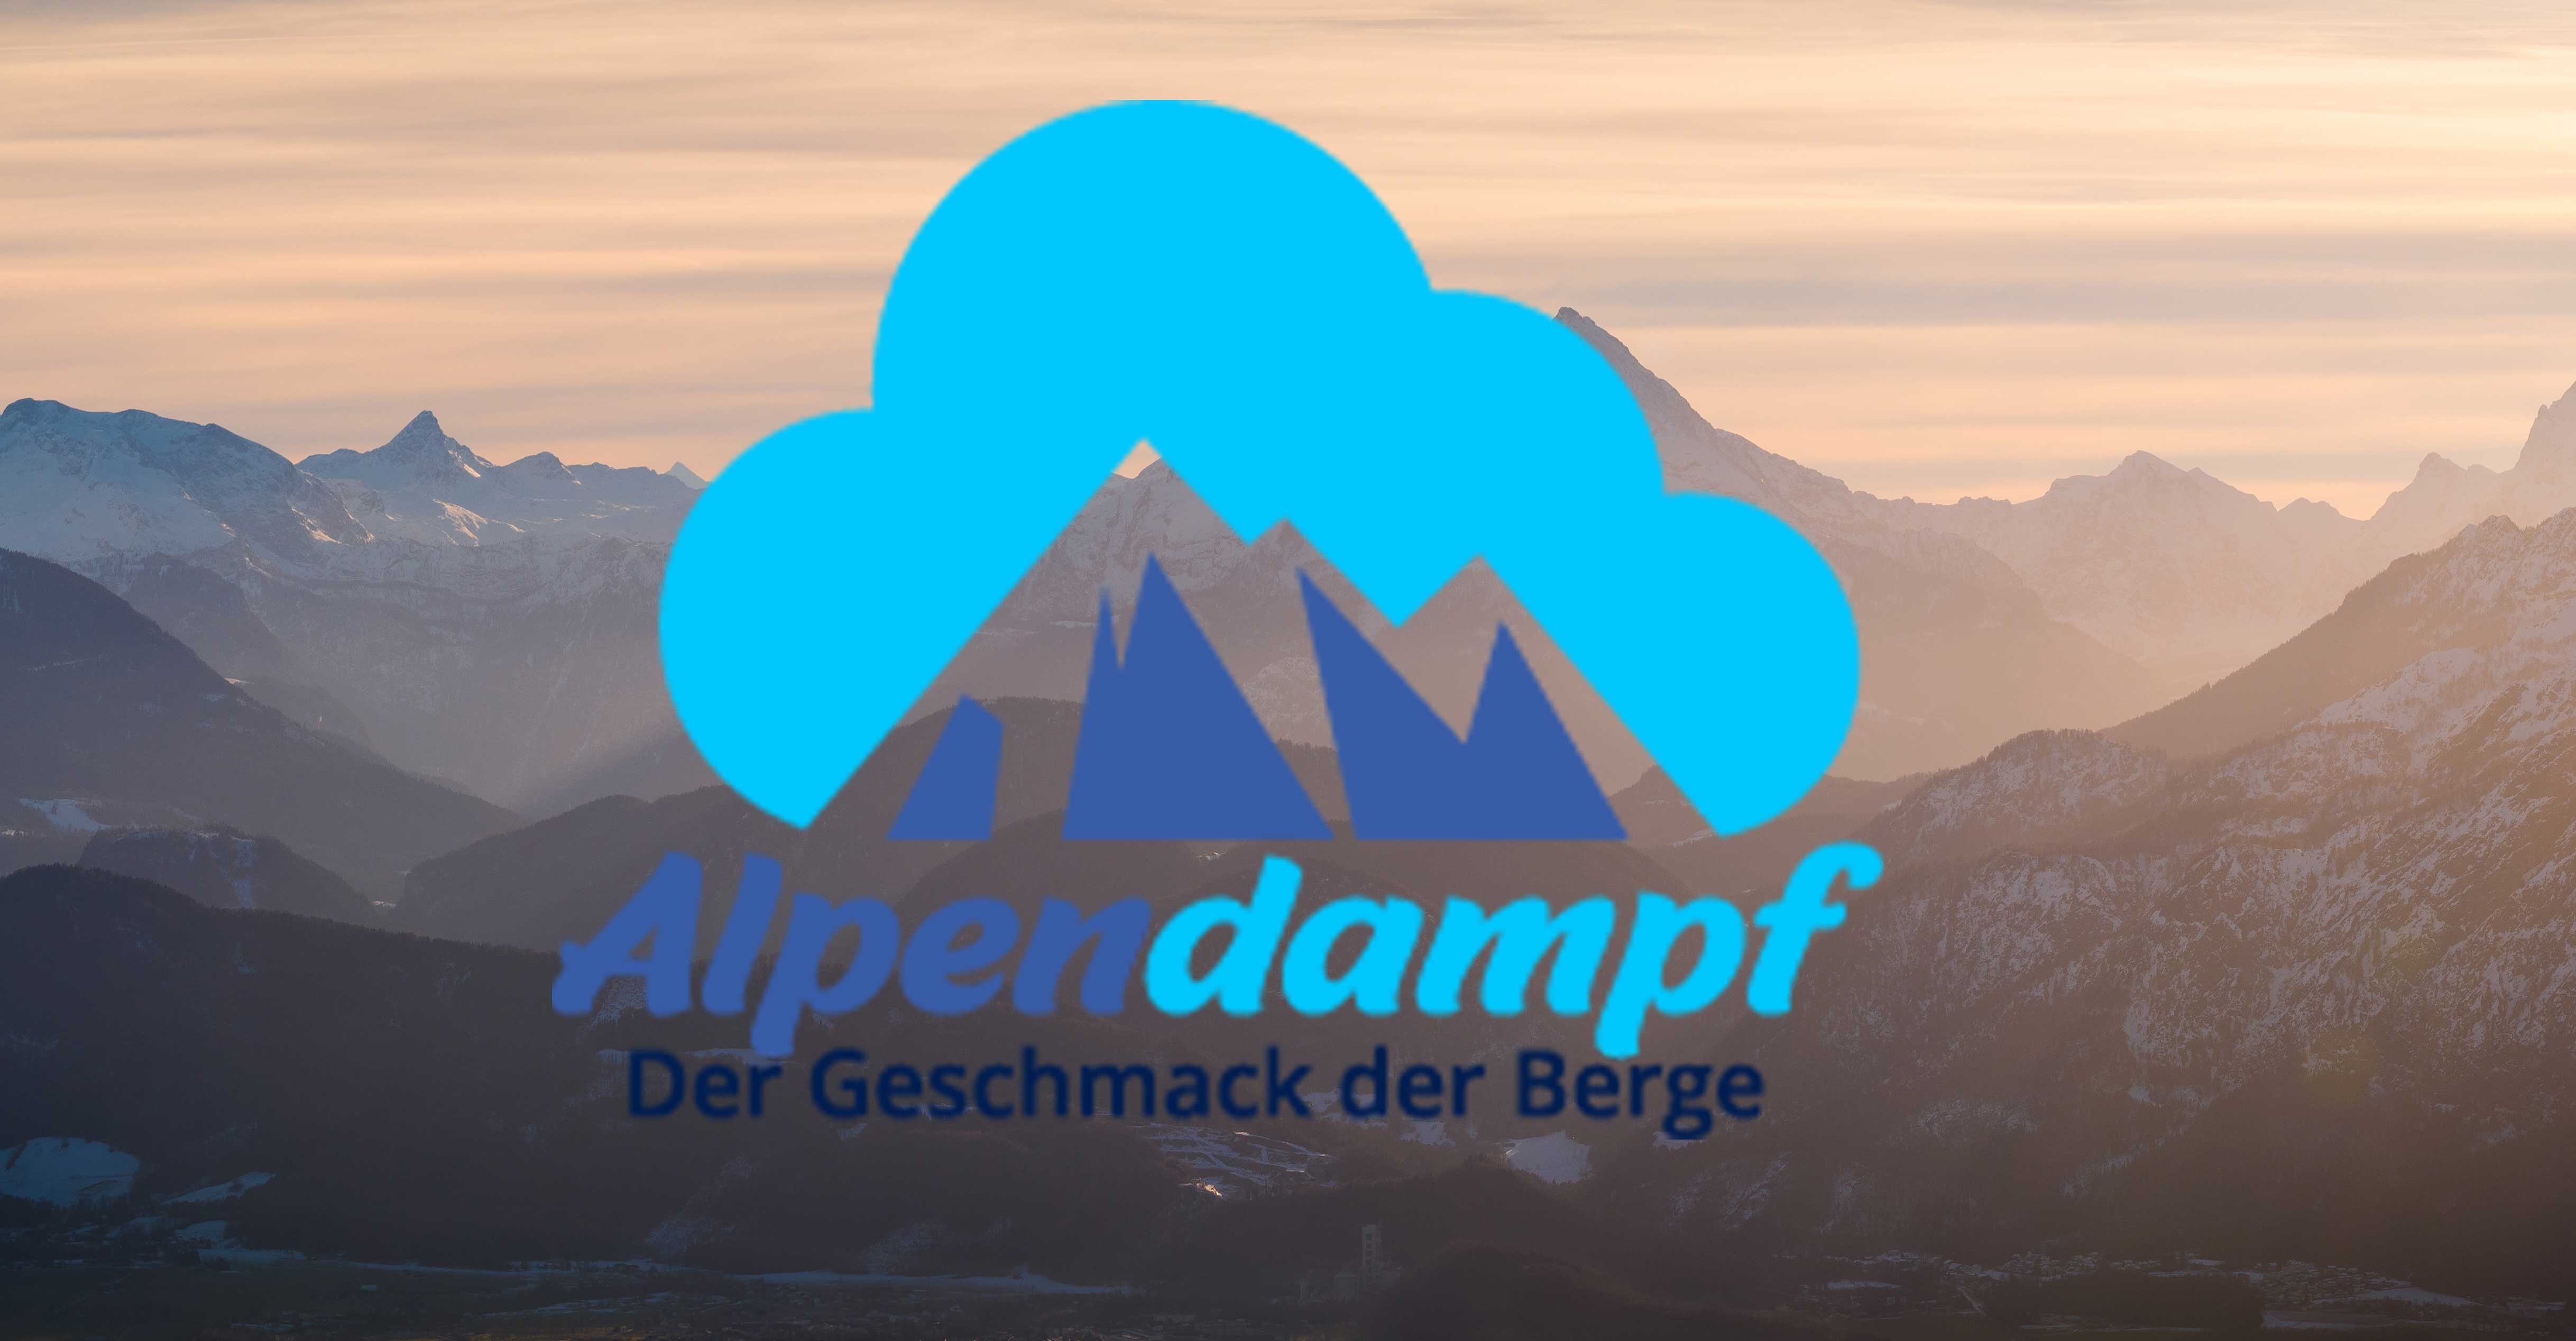 2020-01-20 | Alpendampf - der Geschmack der Berge